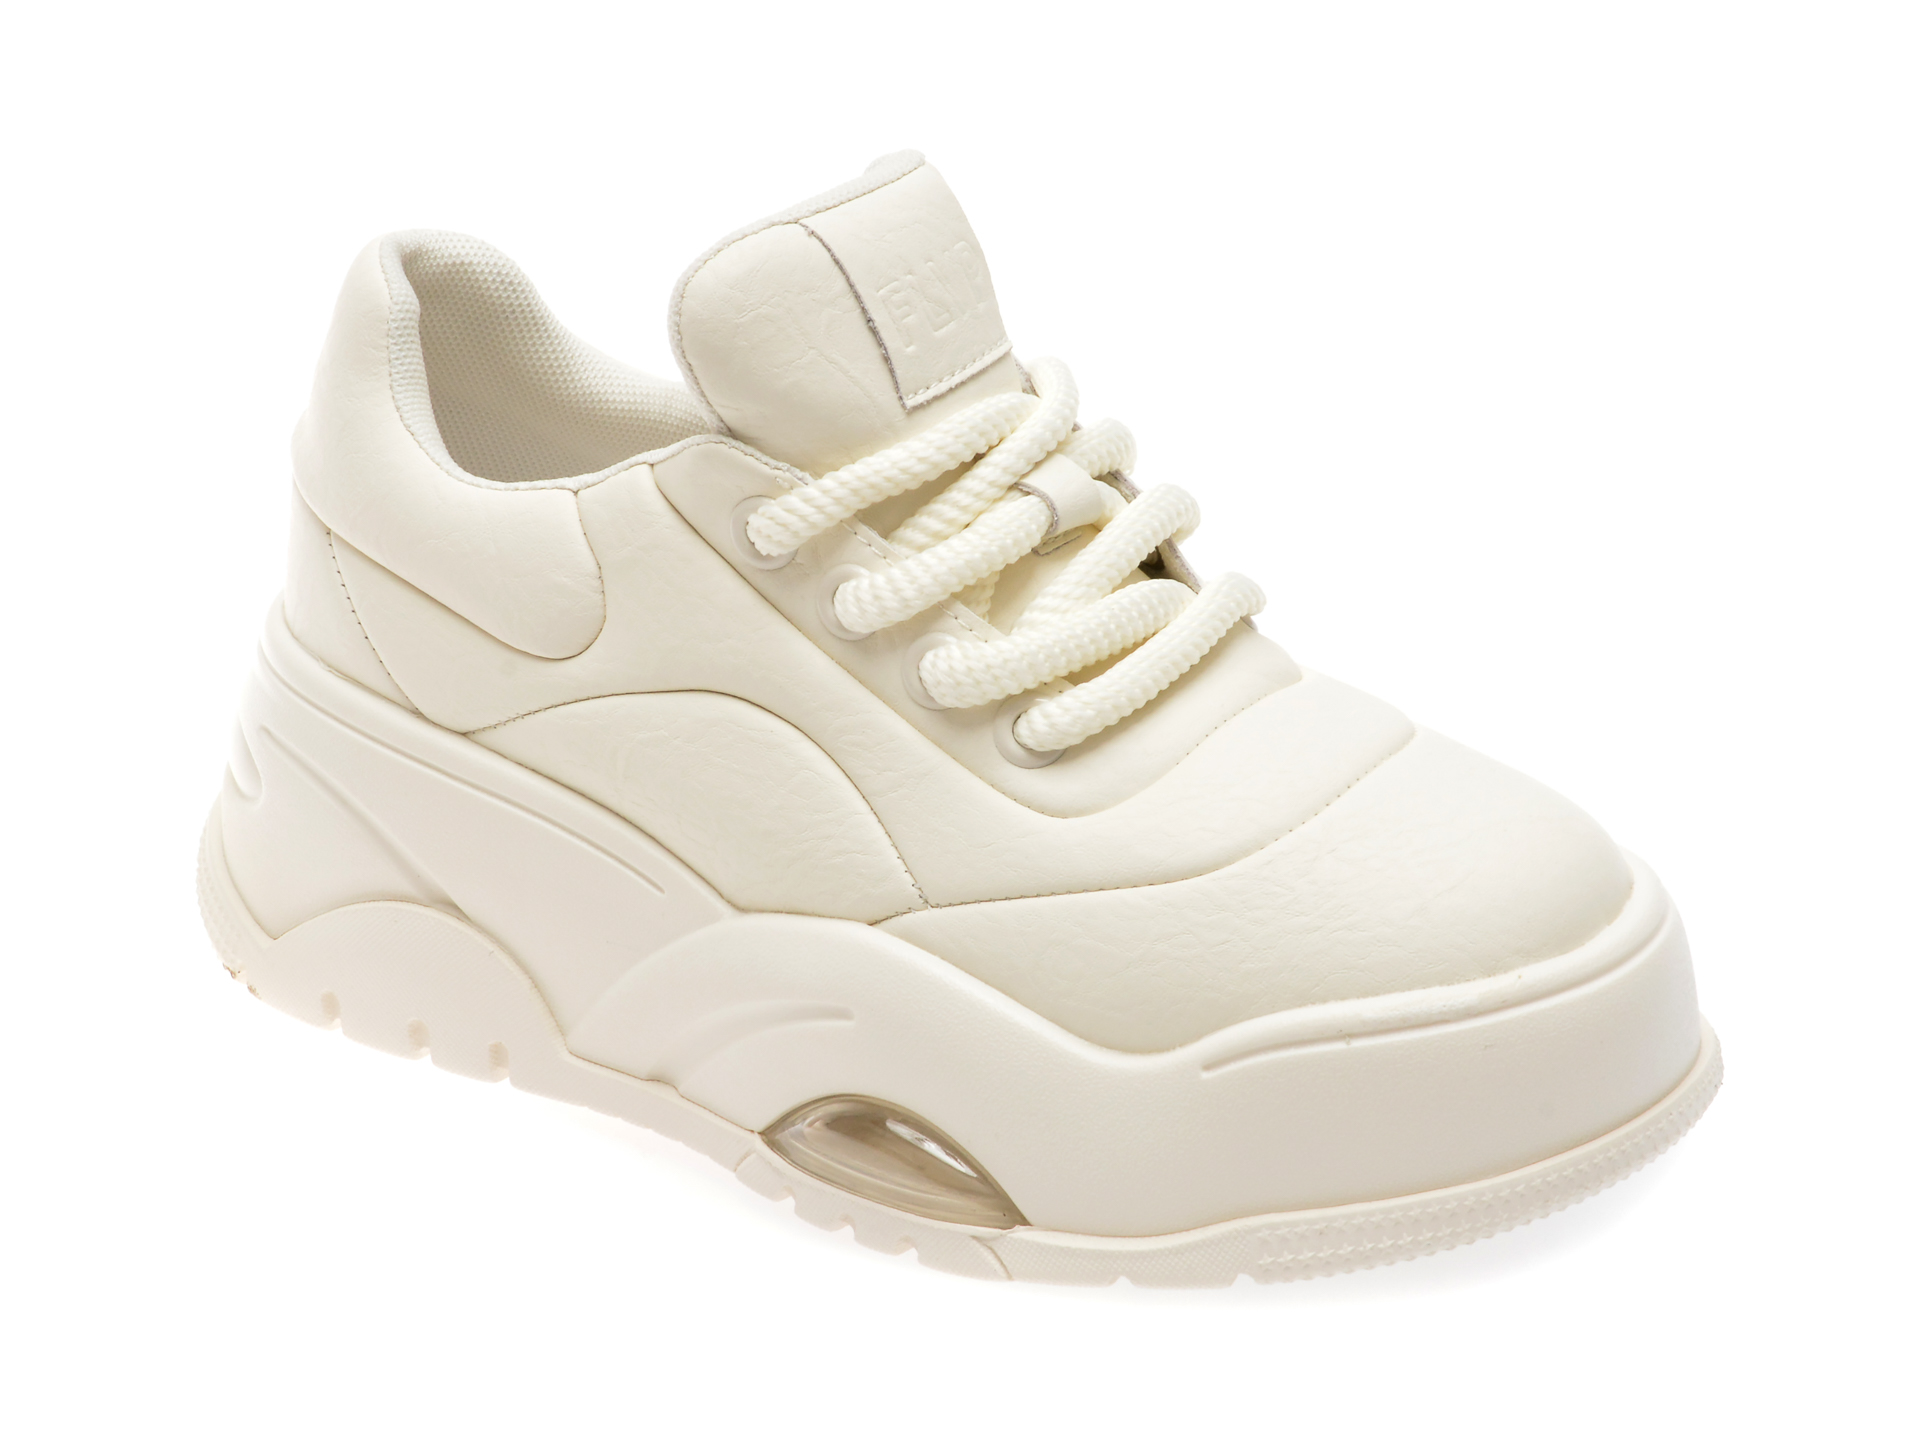 Pantofi casual FLAVIA PASSINI albi, 2161, din piele naturala